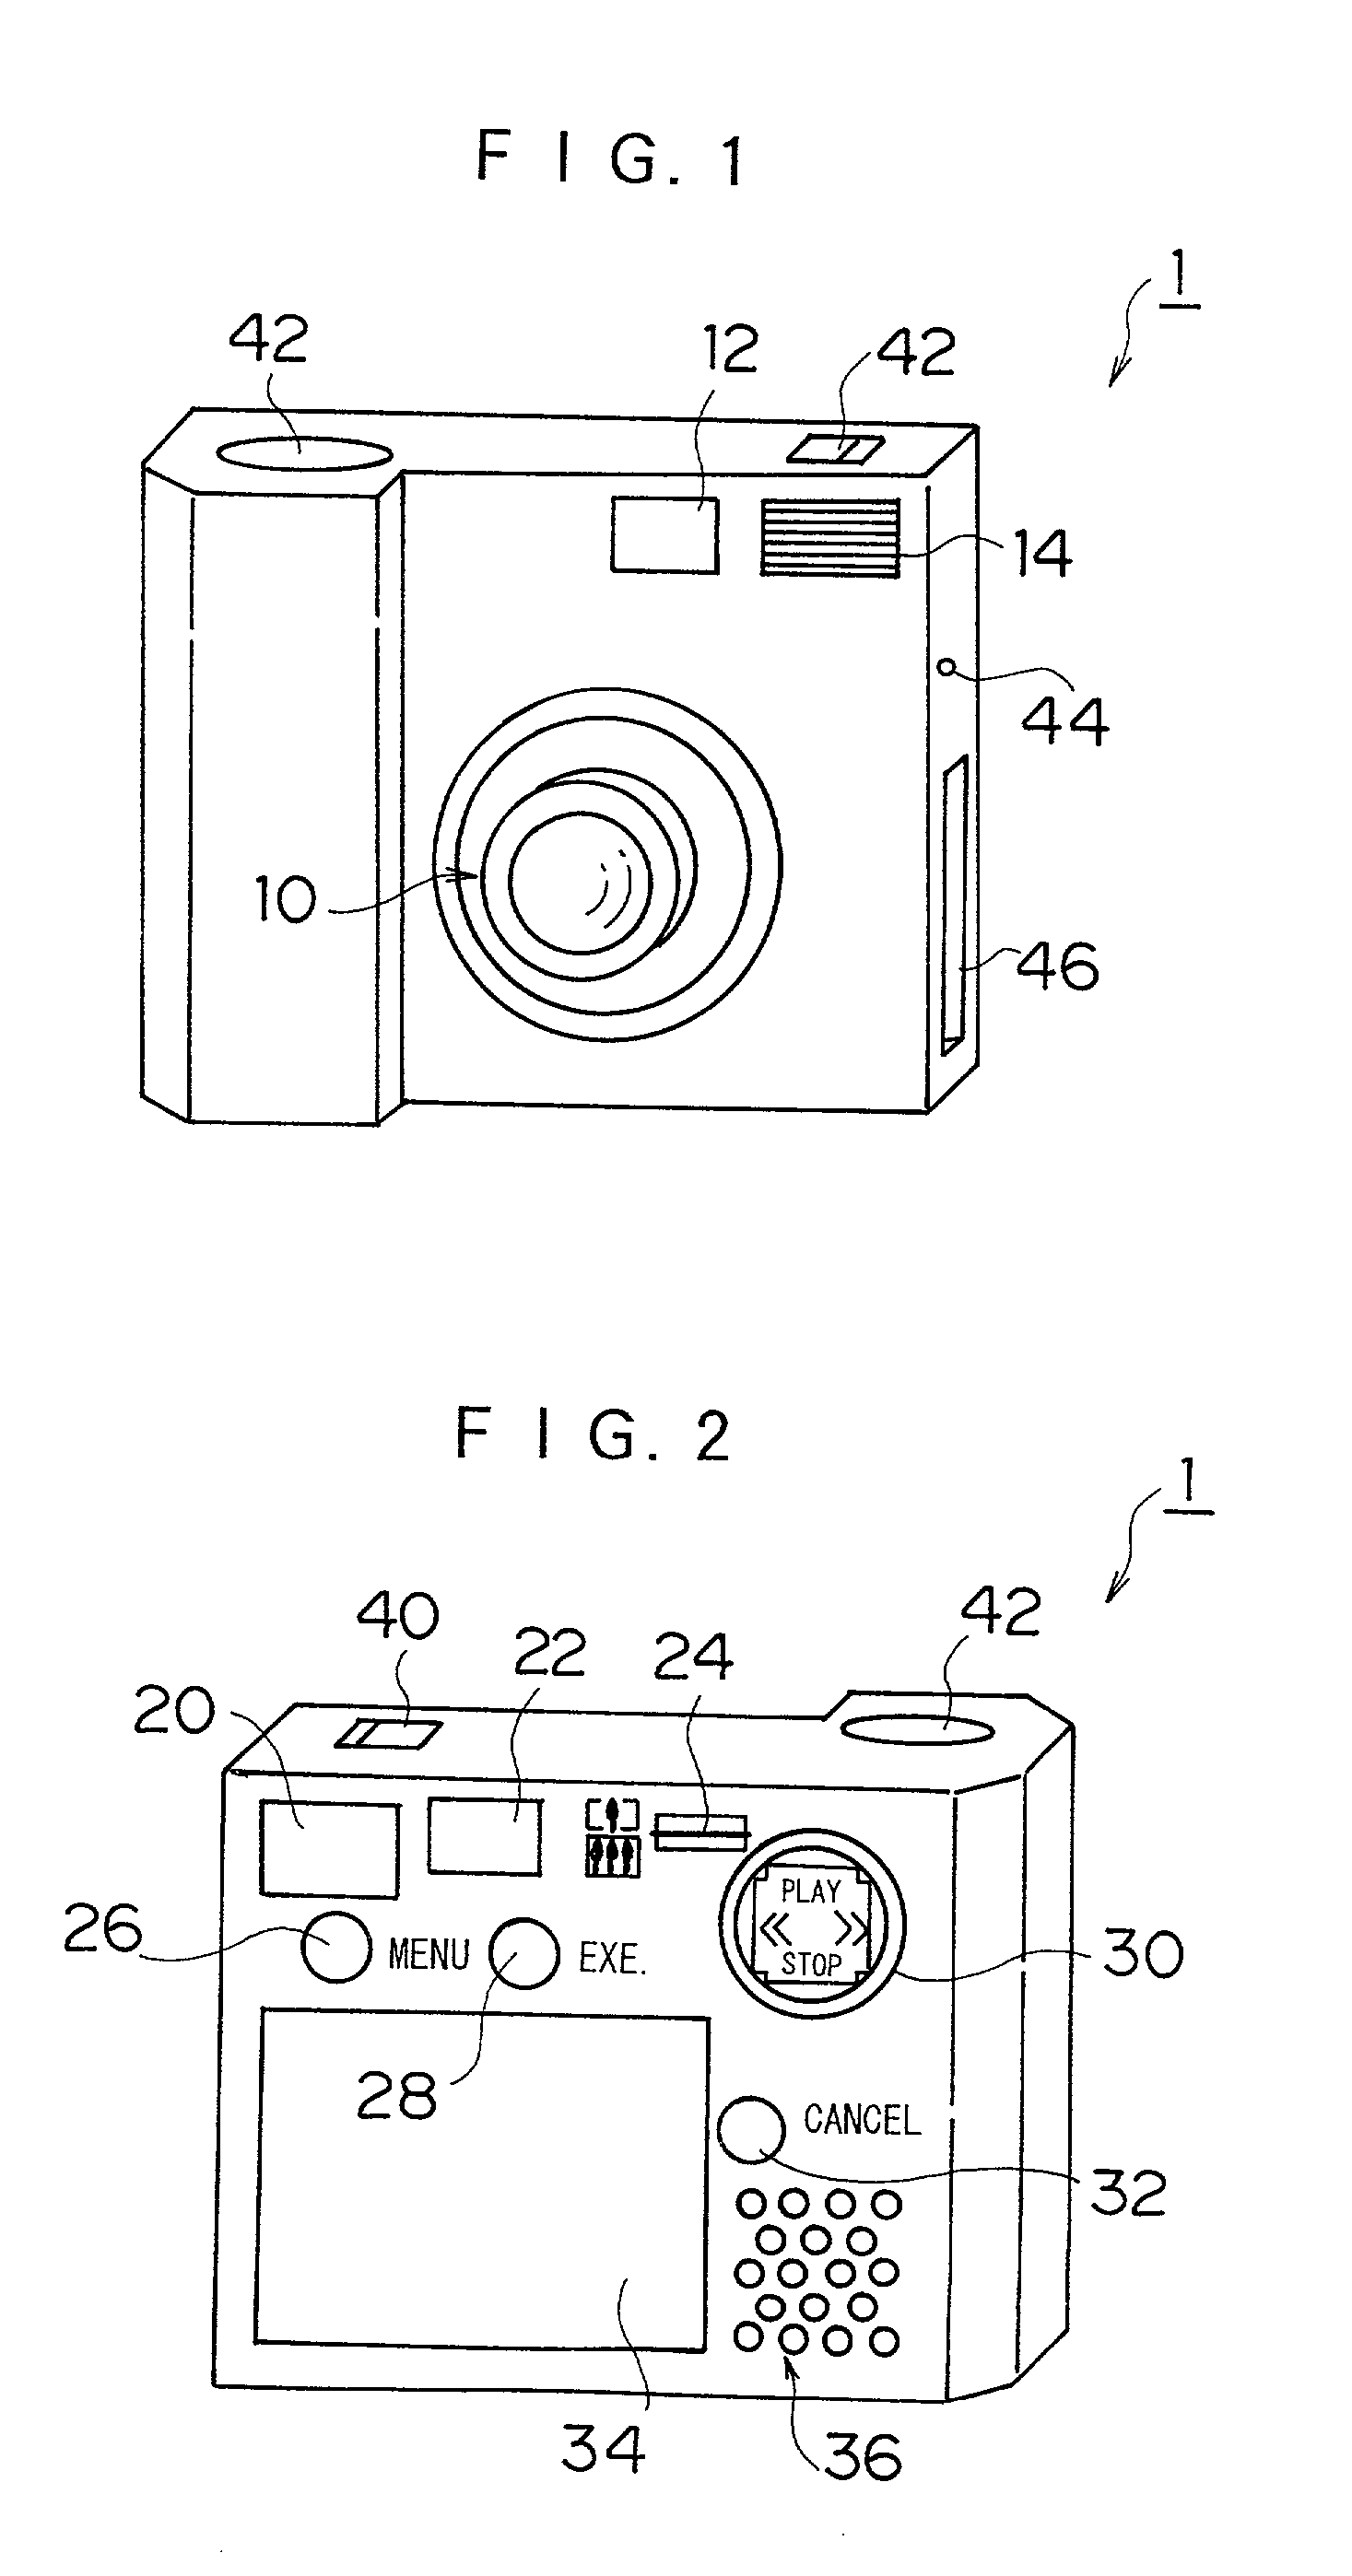 Multi-modal reproducing apparatus and digital camera